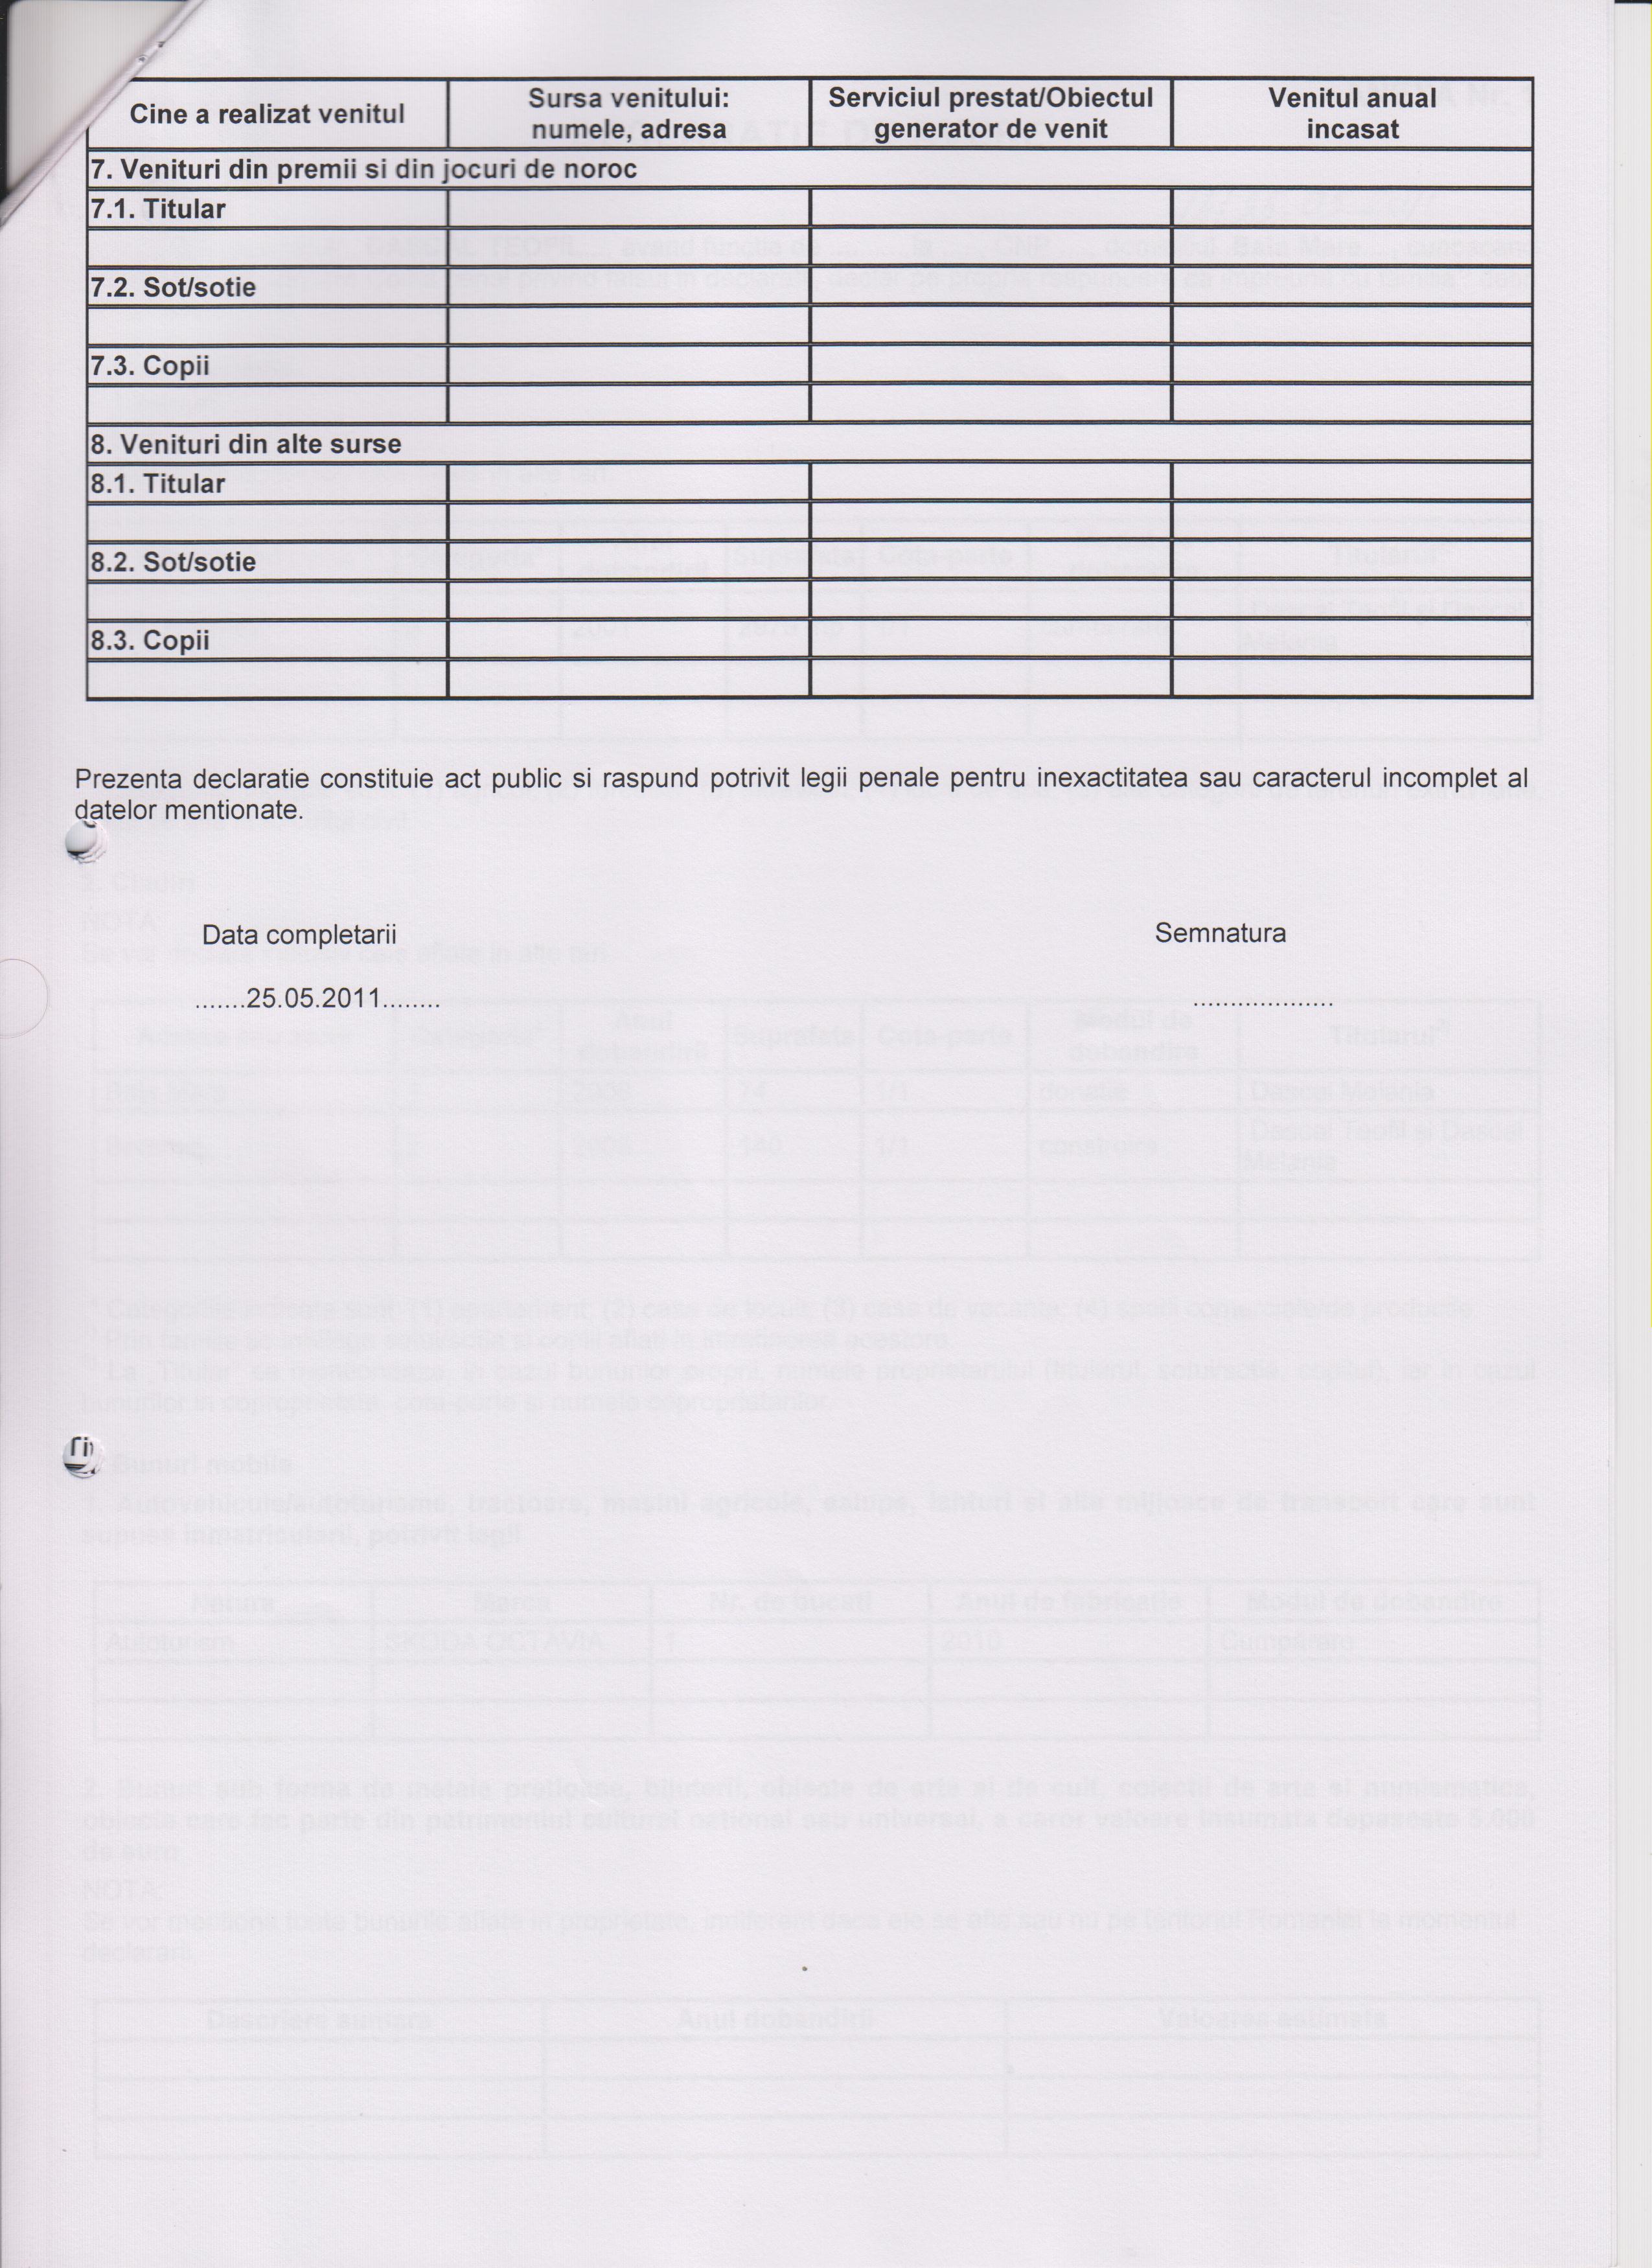 Declaratia de avere si de interese din data 21.09.2011 - pagina 4 din 5